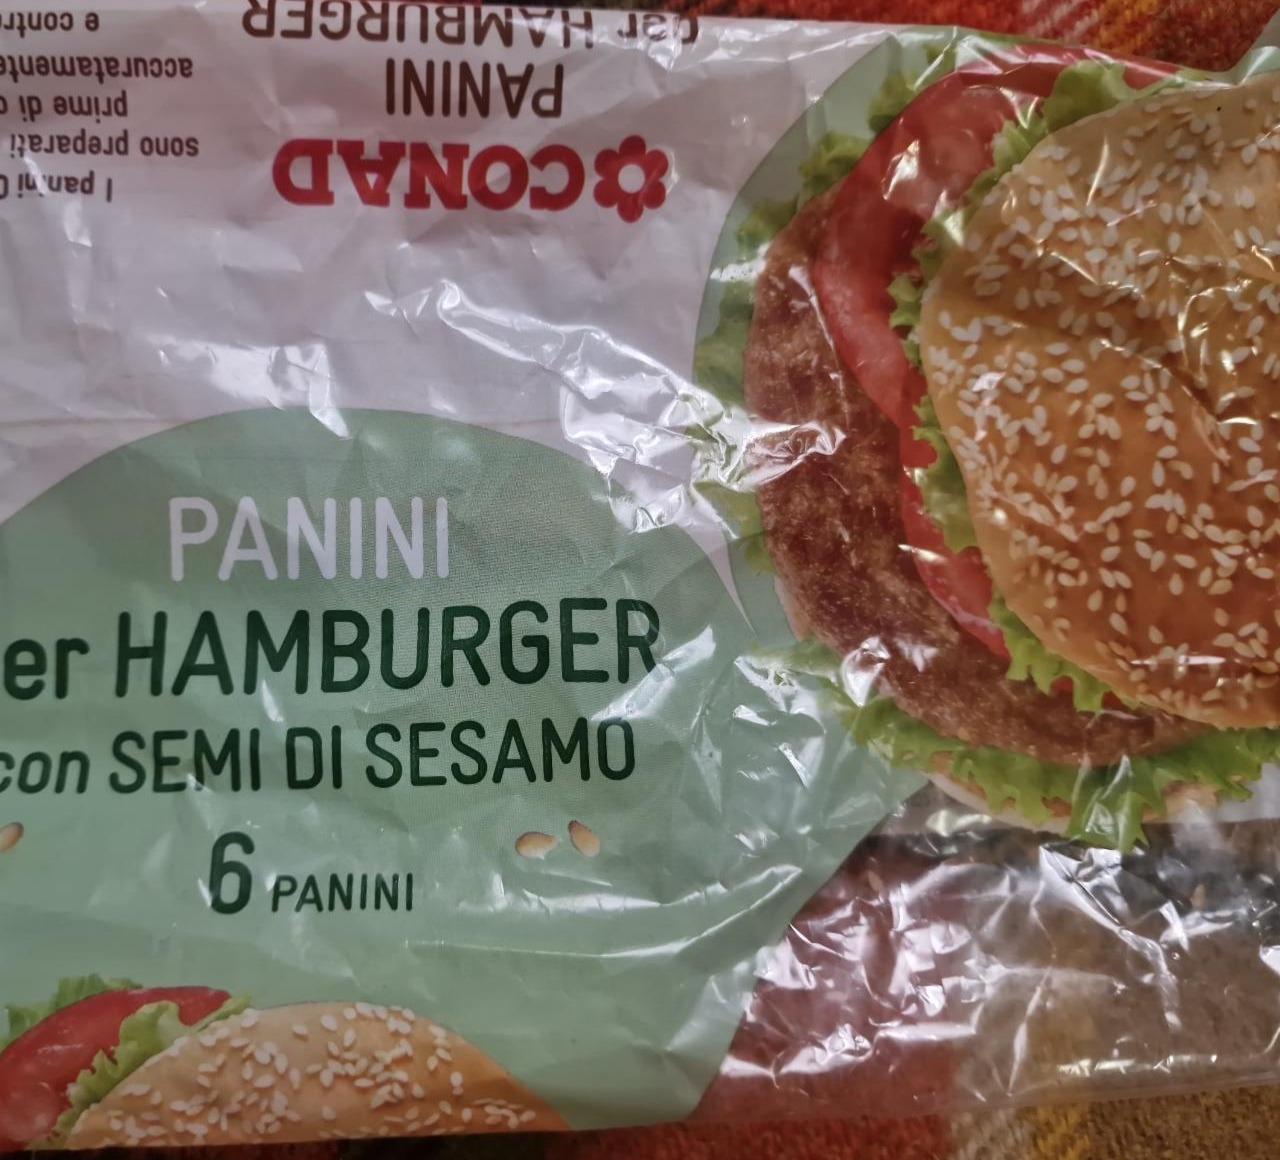 Фото - Panini per hamburger con semi di sesamo Conad